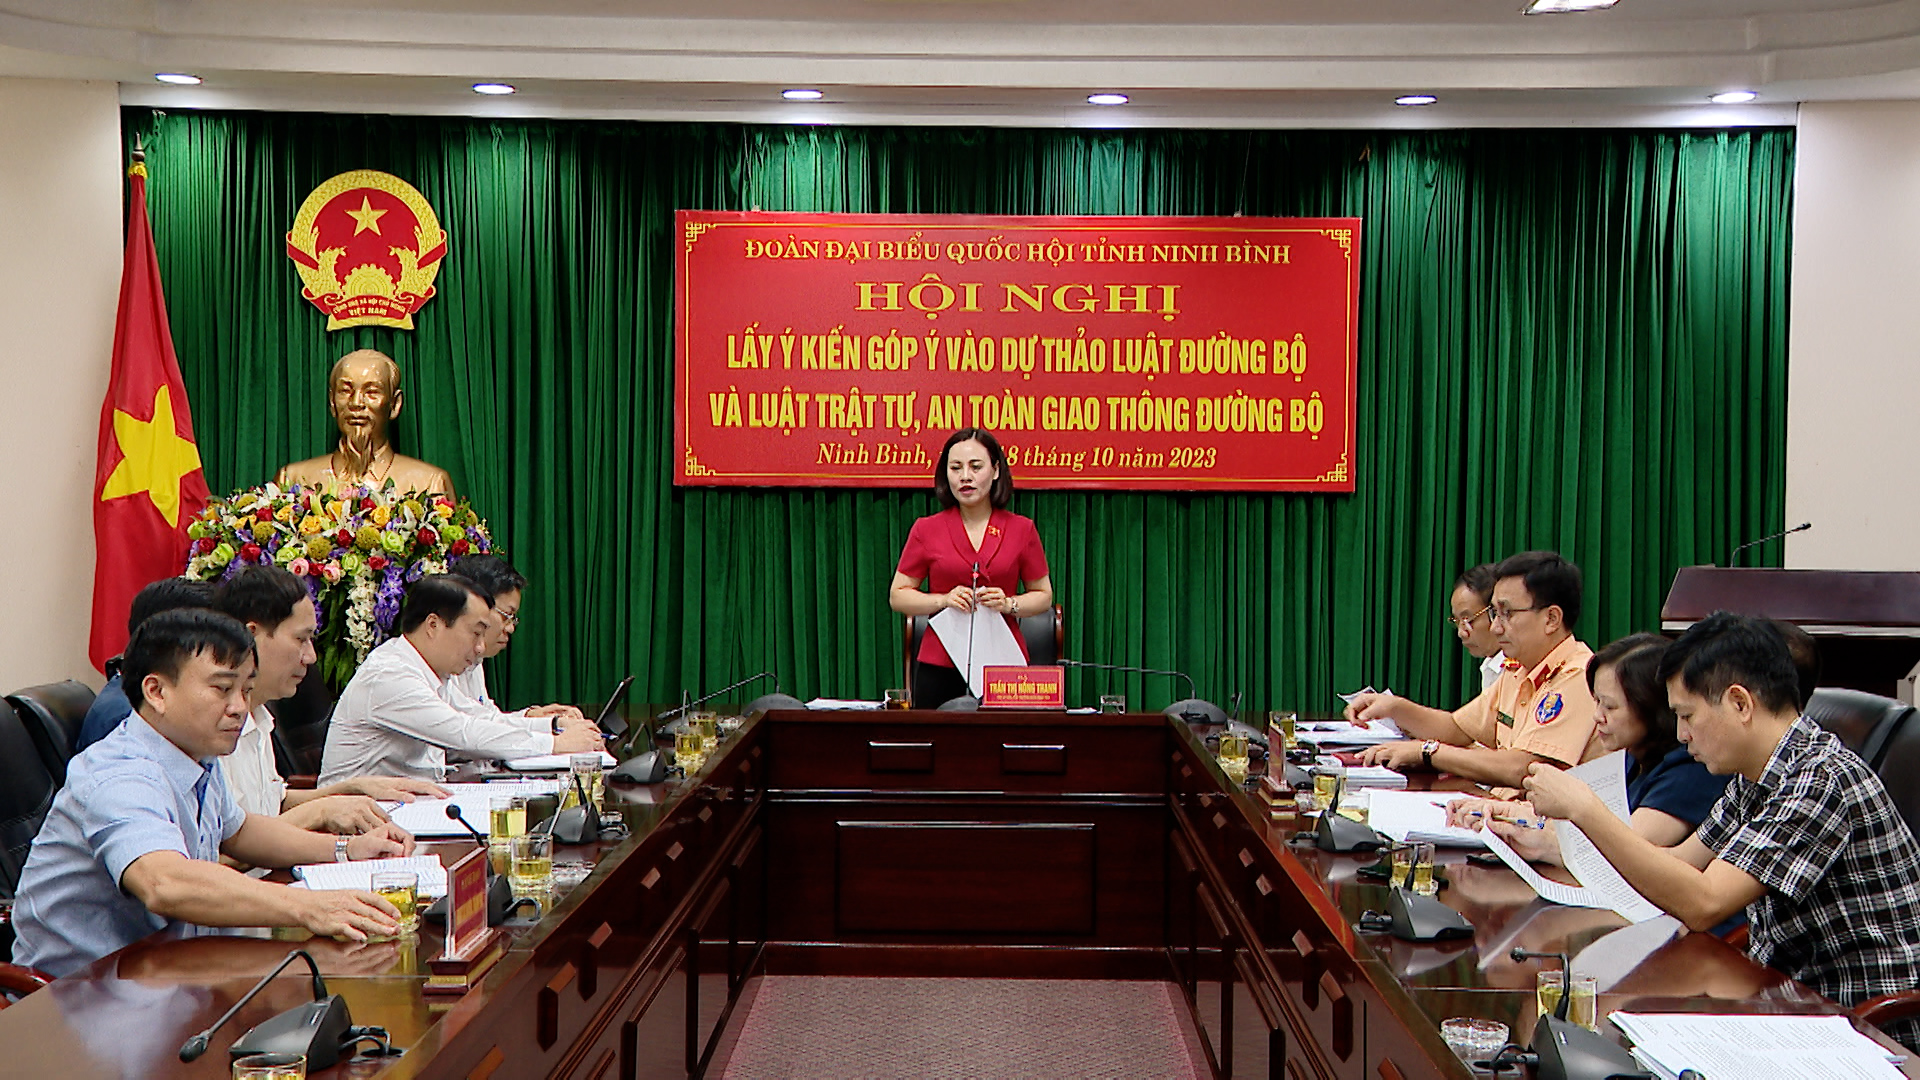 Đoàn Đại biểu Quốc hội tỉnh Ninh Bình lấy ý kiến góp ý vào dự thảo Luật Đường bộ và Luật Trật tự, an toàn giao thông đường bộ